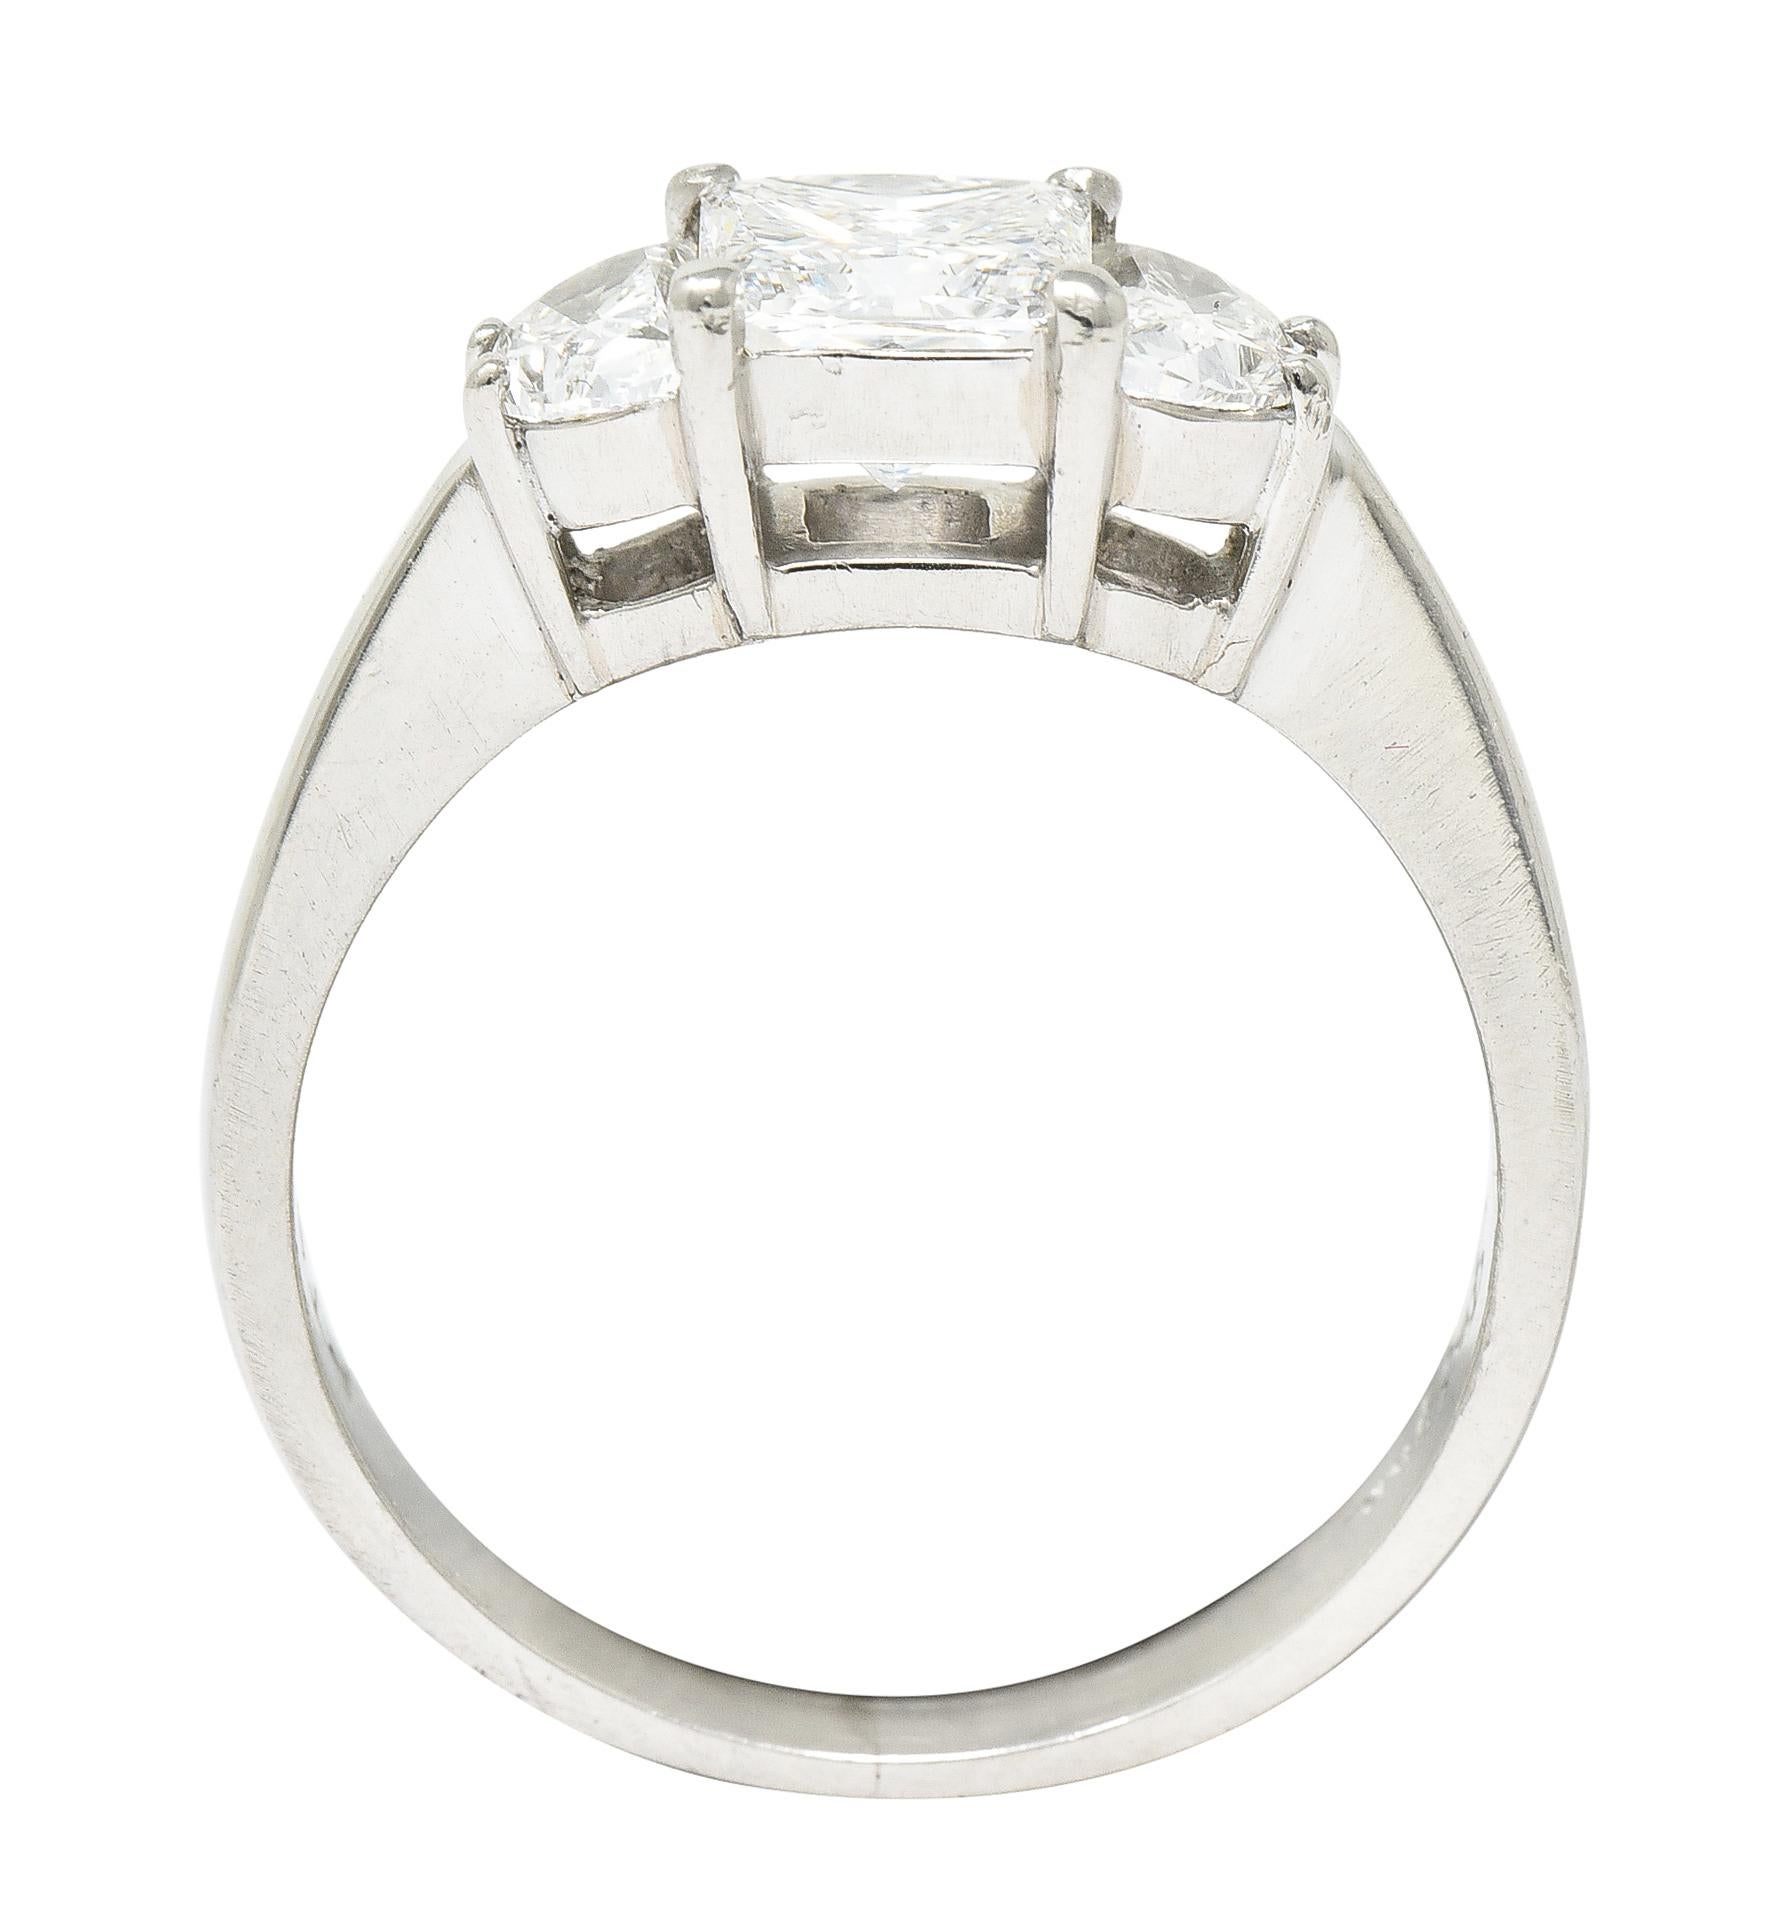 JB Star 1.55 Carats Princess Cut Diamond Platinum Engagement Ring GIA 5